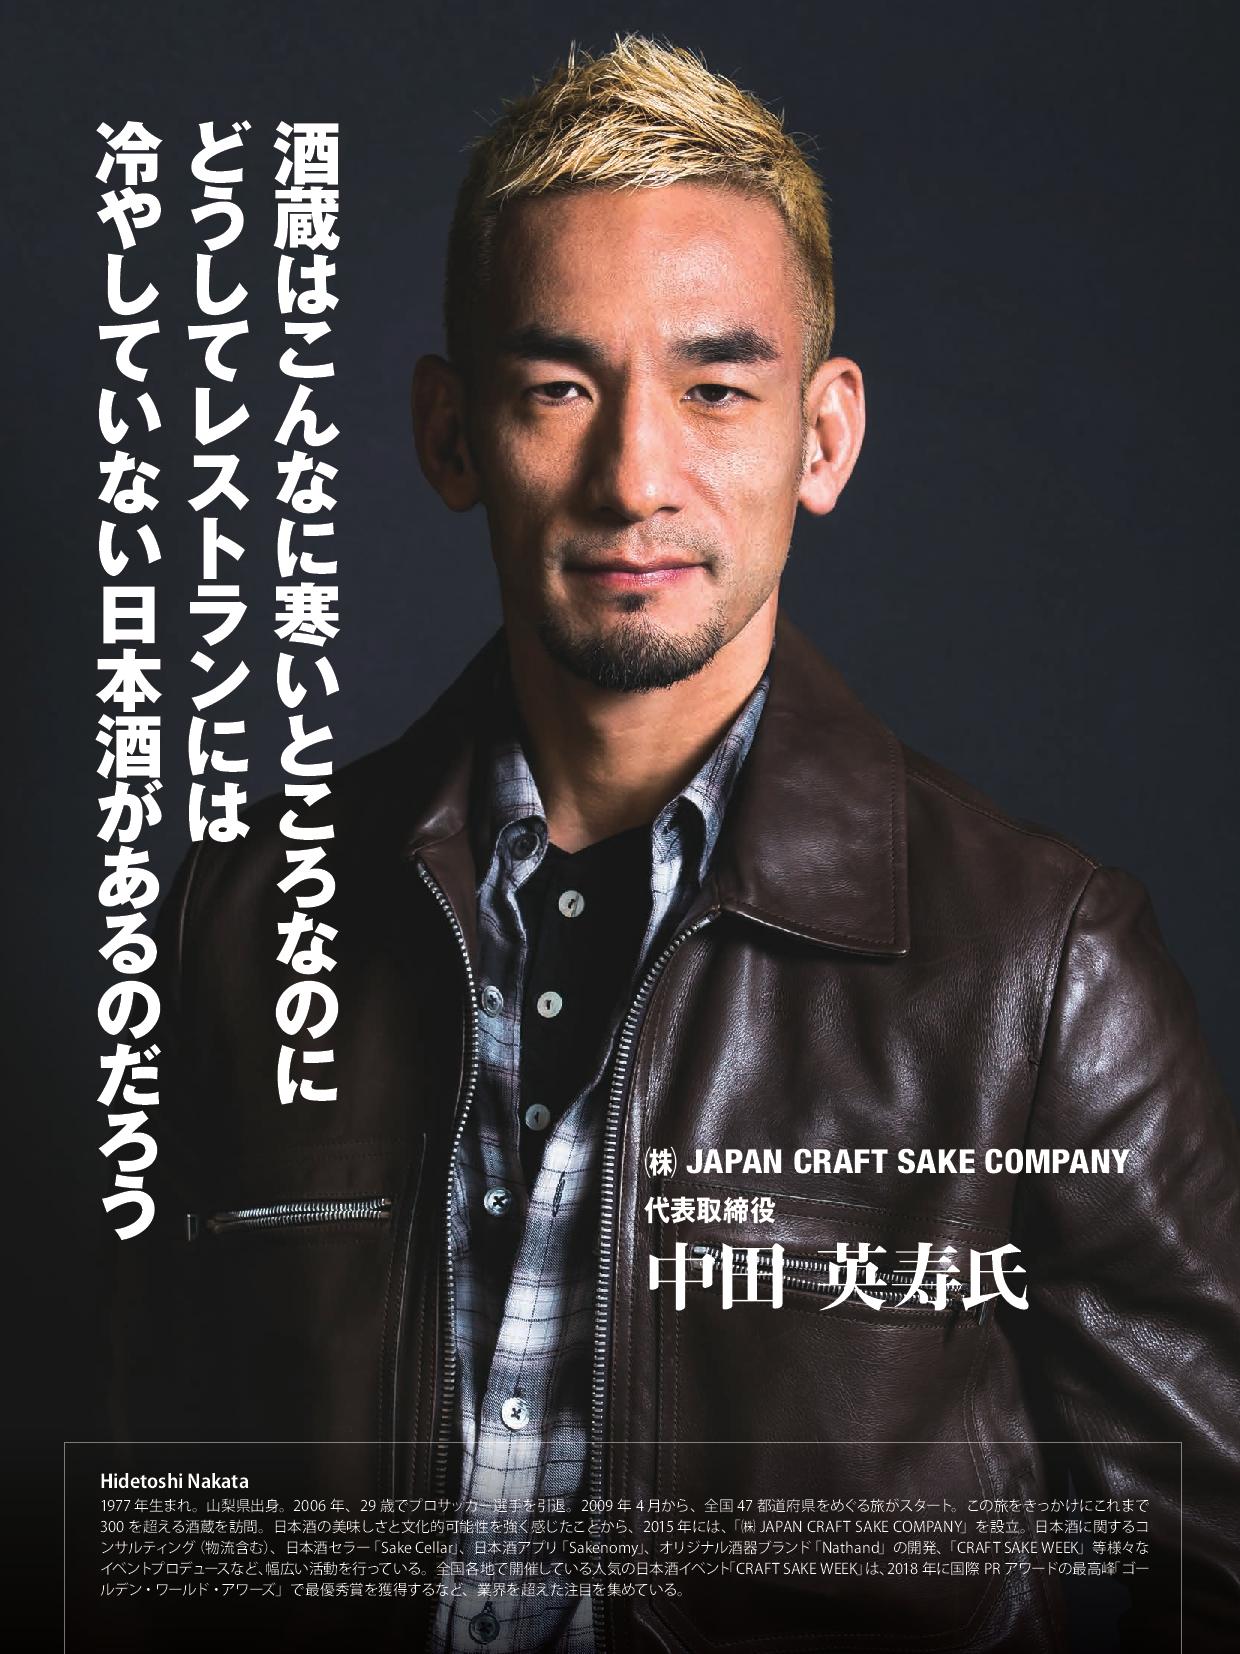 週刊ホテルレストラン19年11月22日号に代表の中田英寿の対談が掲載されました 株式会社 Japan Craft Sake Company